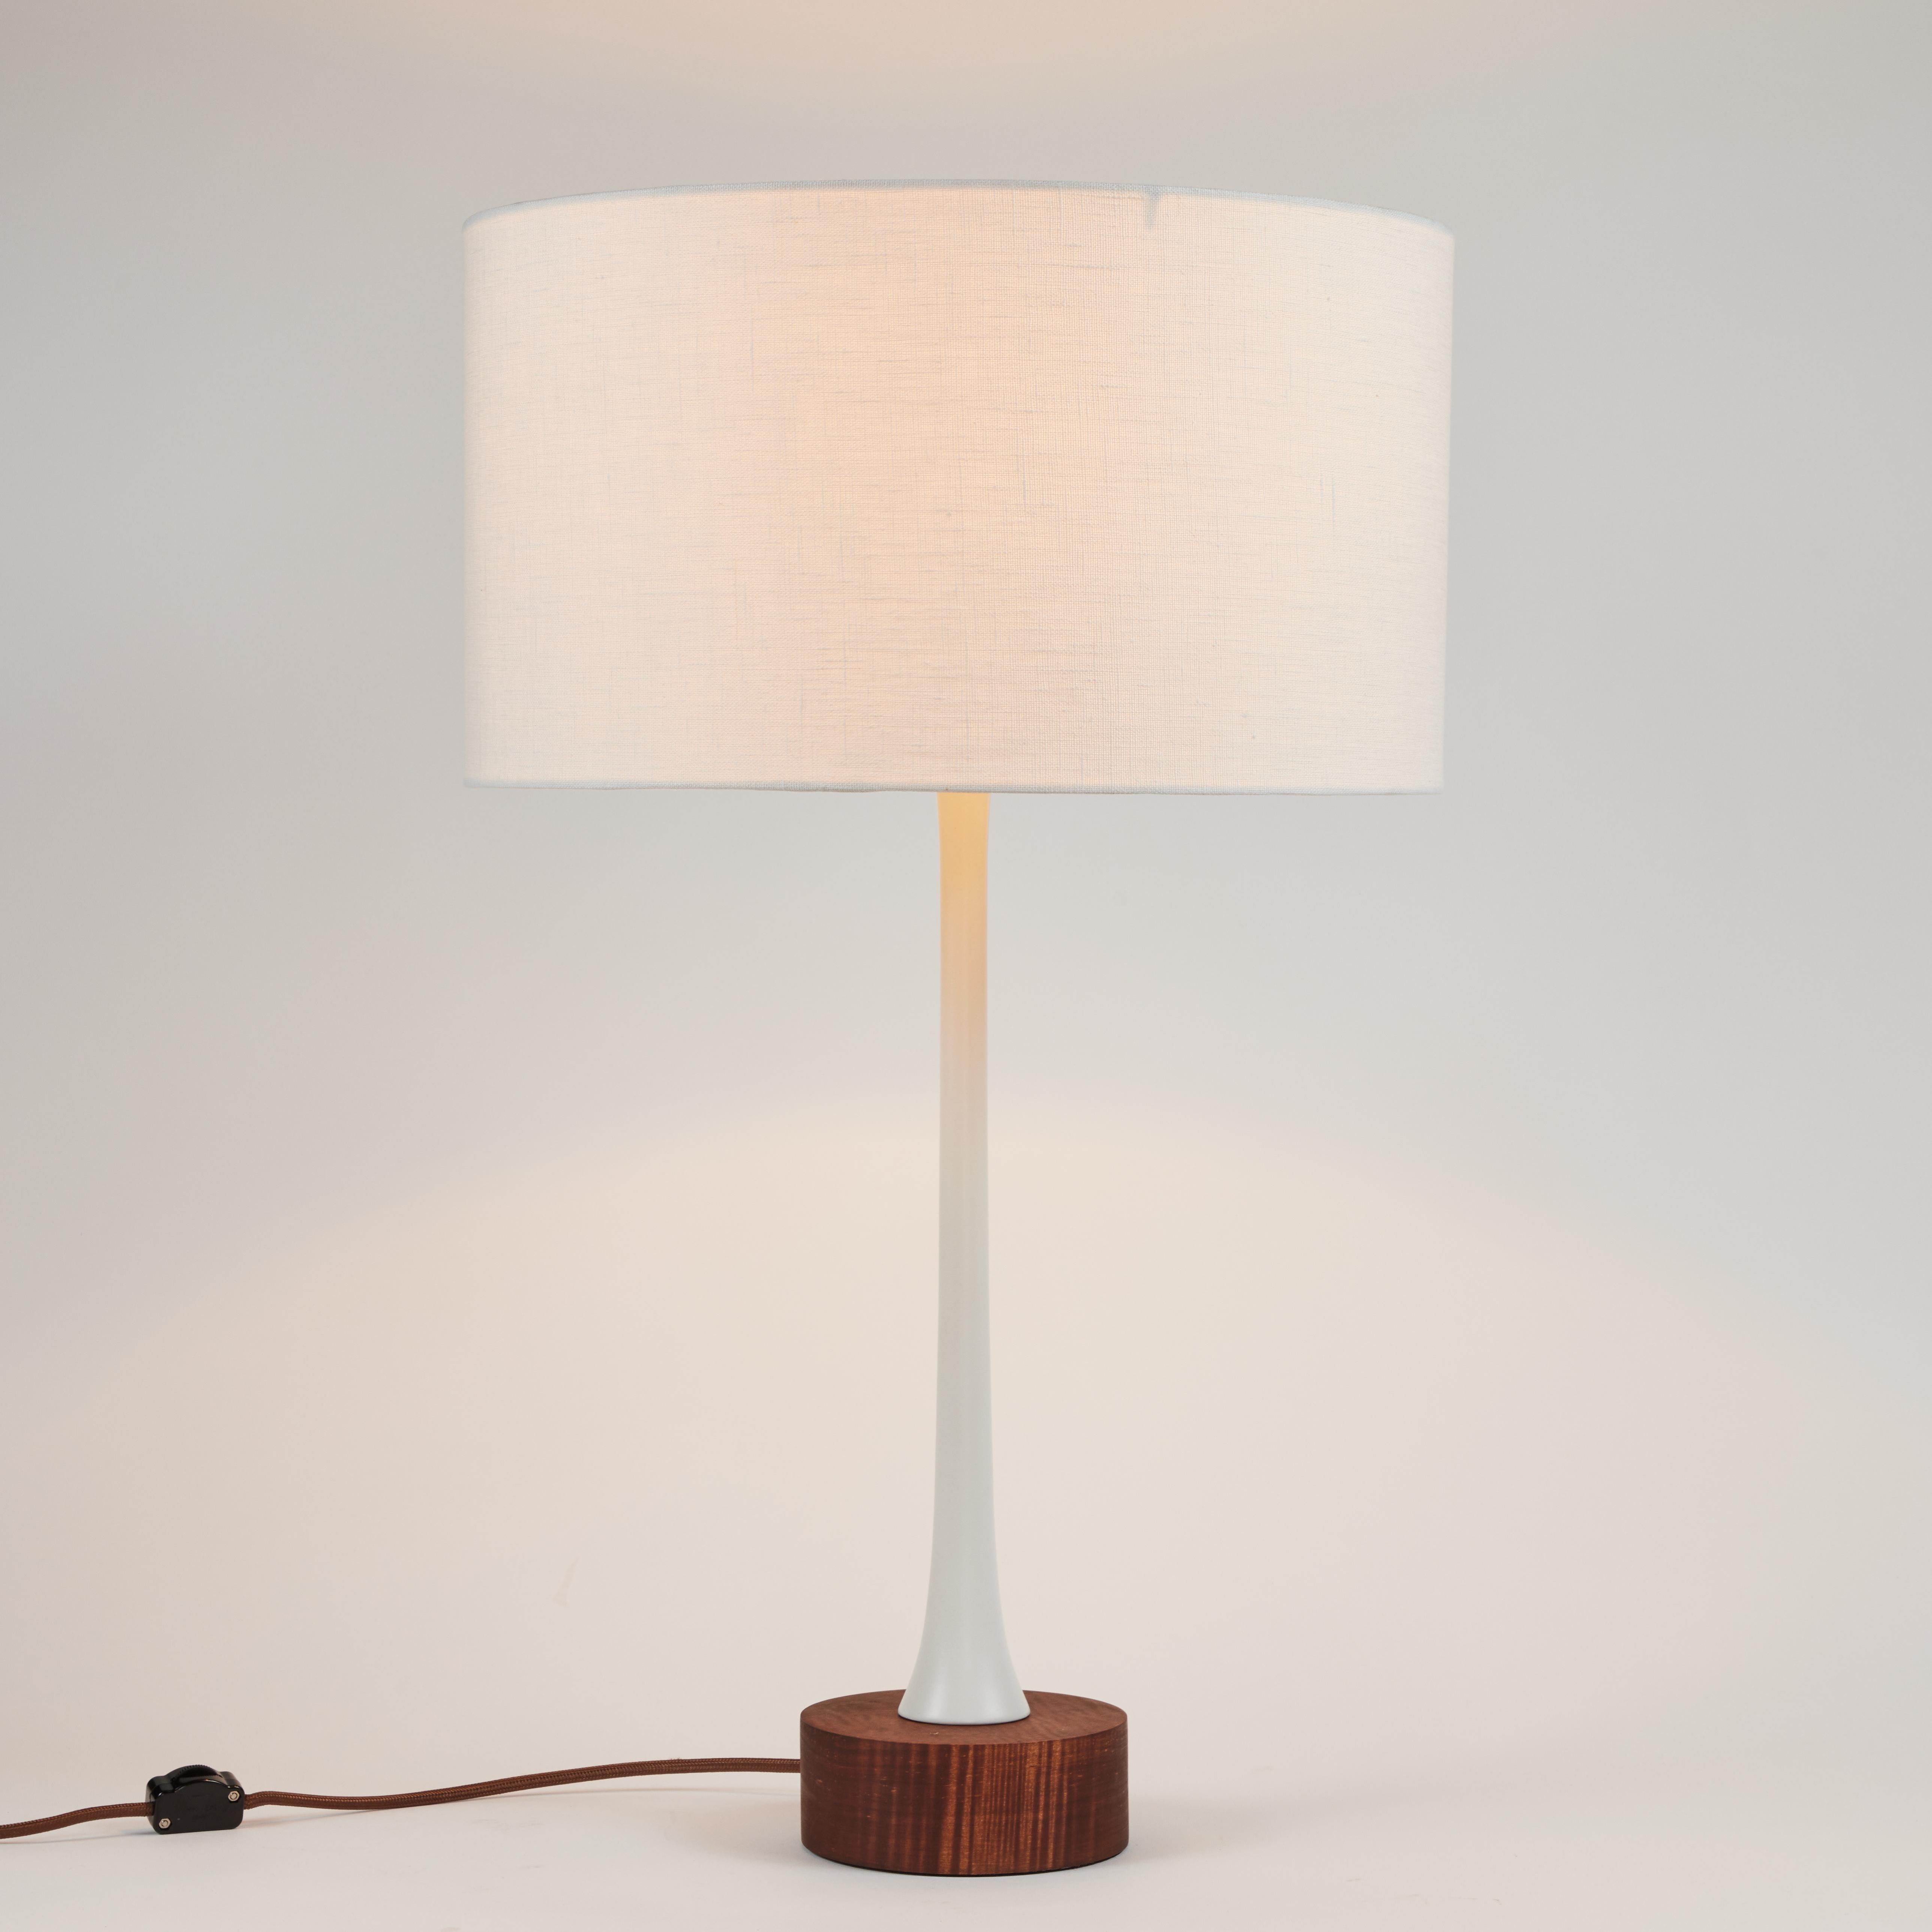 Lampe de table en métal et bois 'Sofi' d'Alvaro Benitez. Fabriquées à la main par Alvaro Benitez, designer et professionnel de l'éclairage basé à Los Angeles, ces lampes de table très raffinées rappellent les designs italiens emblématiques du milieu